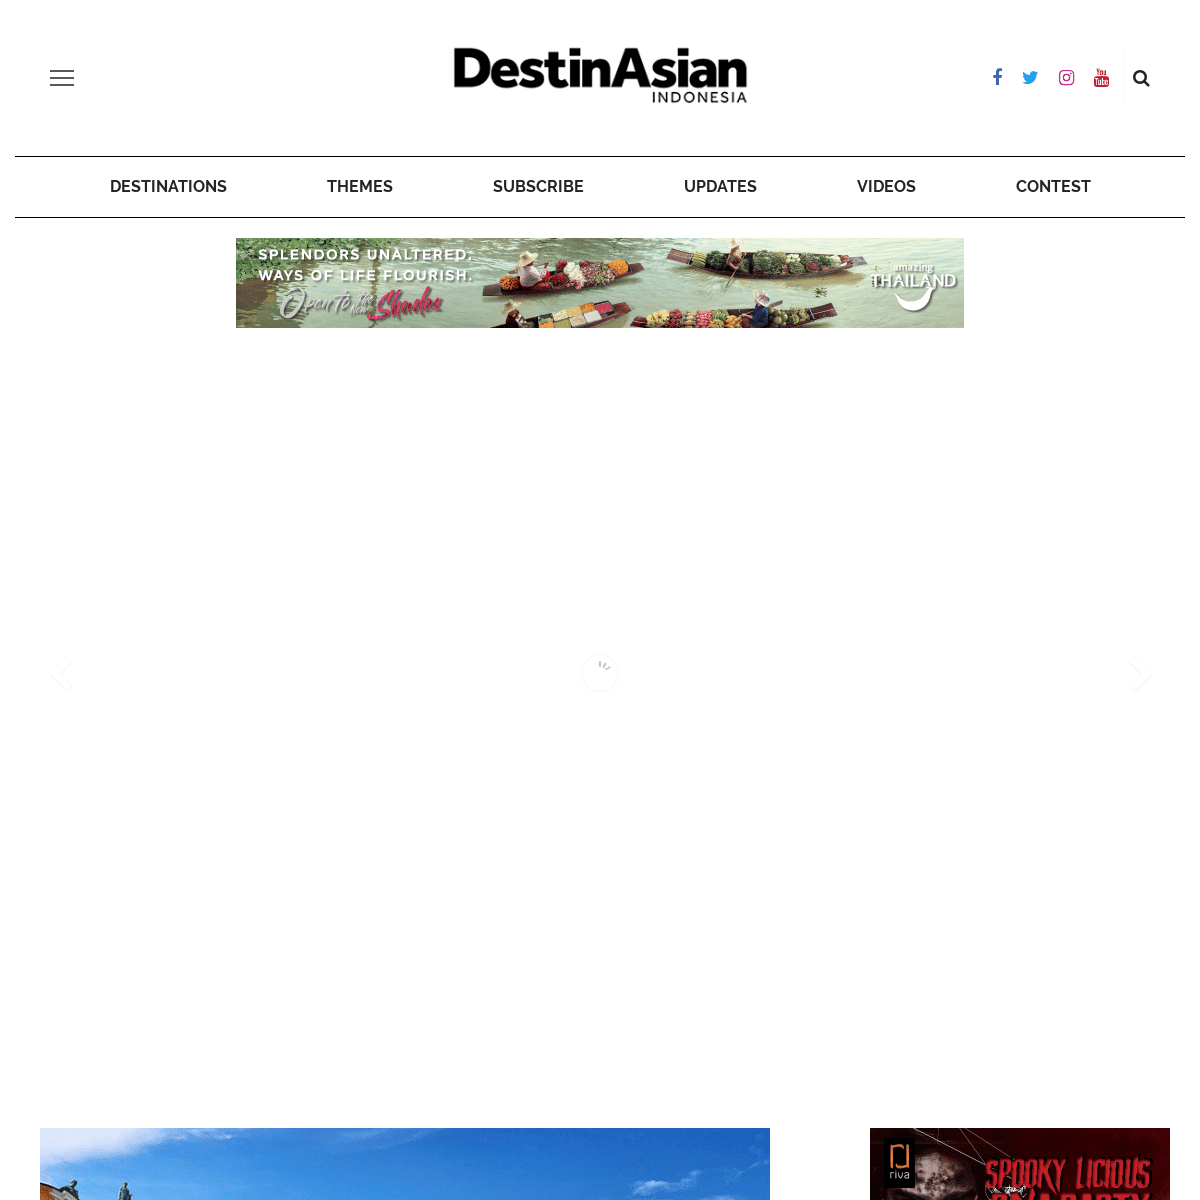 DestinAsian Indonesia - Travel magazine